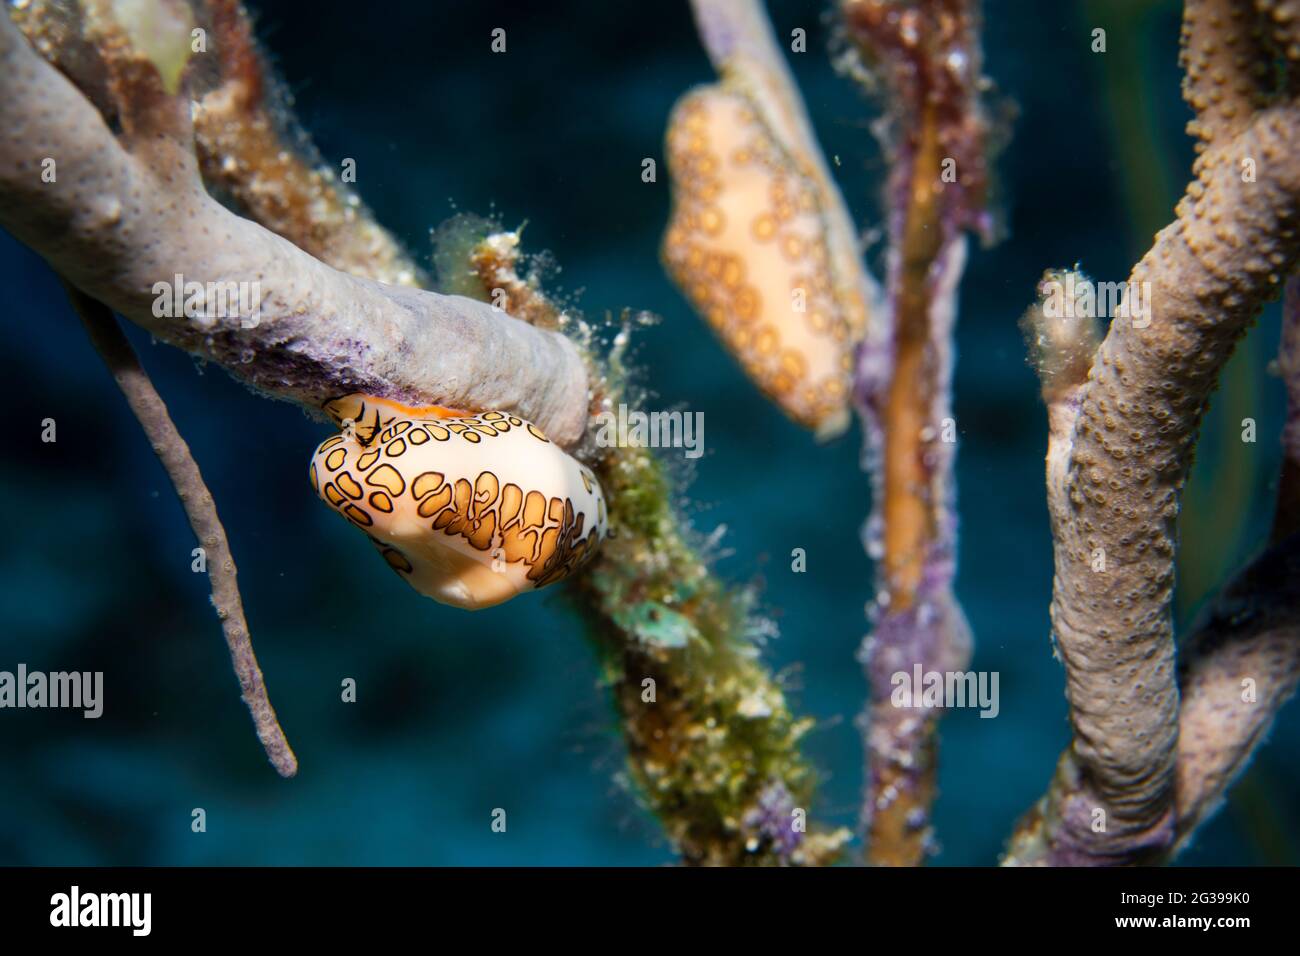 Lengua flamenca en un coral, fotografía submarina en Cozumel México Foto de stock